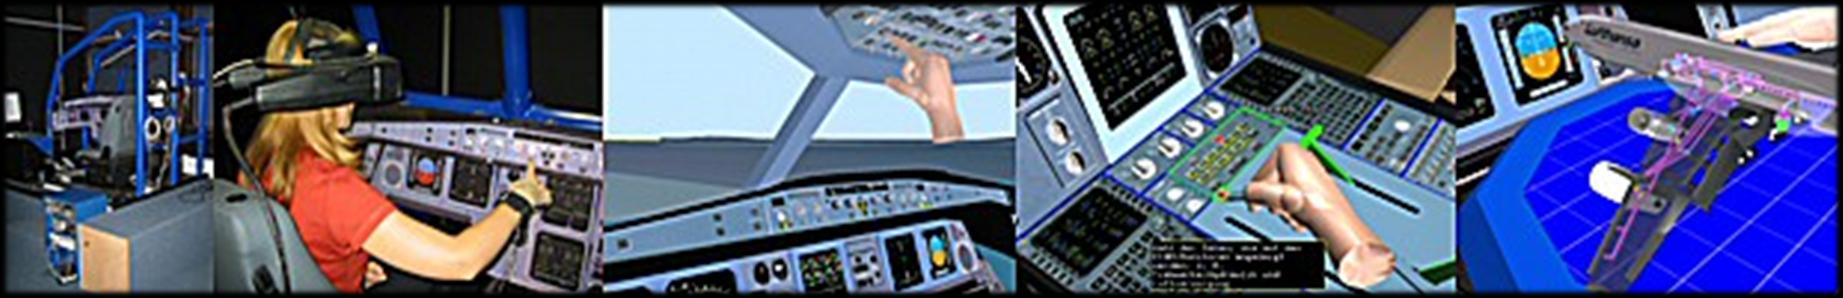 Produktentwicklung Cockpit-Evaluation Sichtfeldanalyse und -Optimierung Sinnvolle Anordnung der Anzeigen und Bedienelementen hinsichtlich